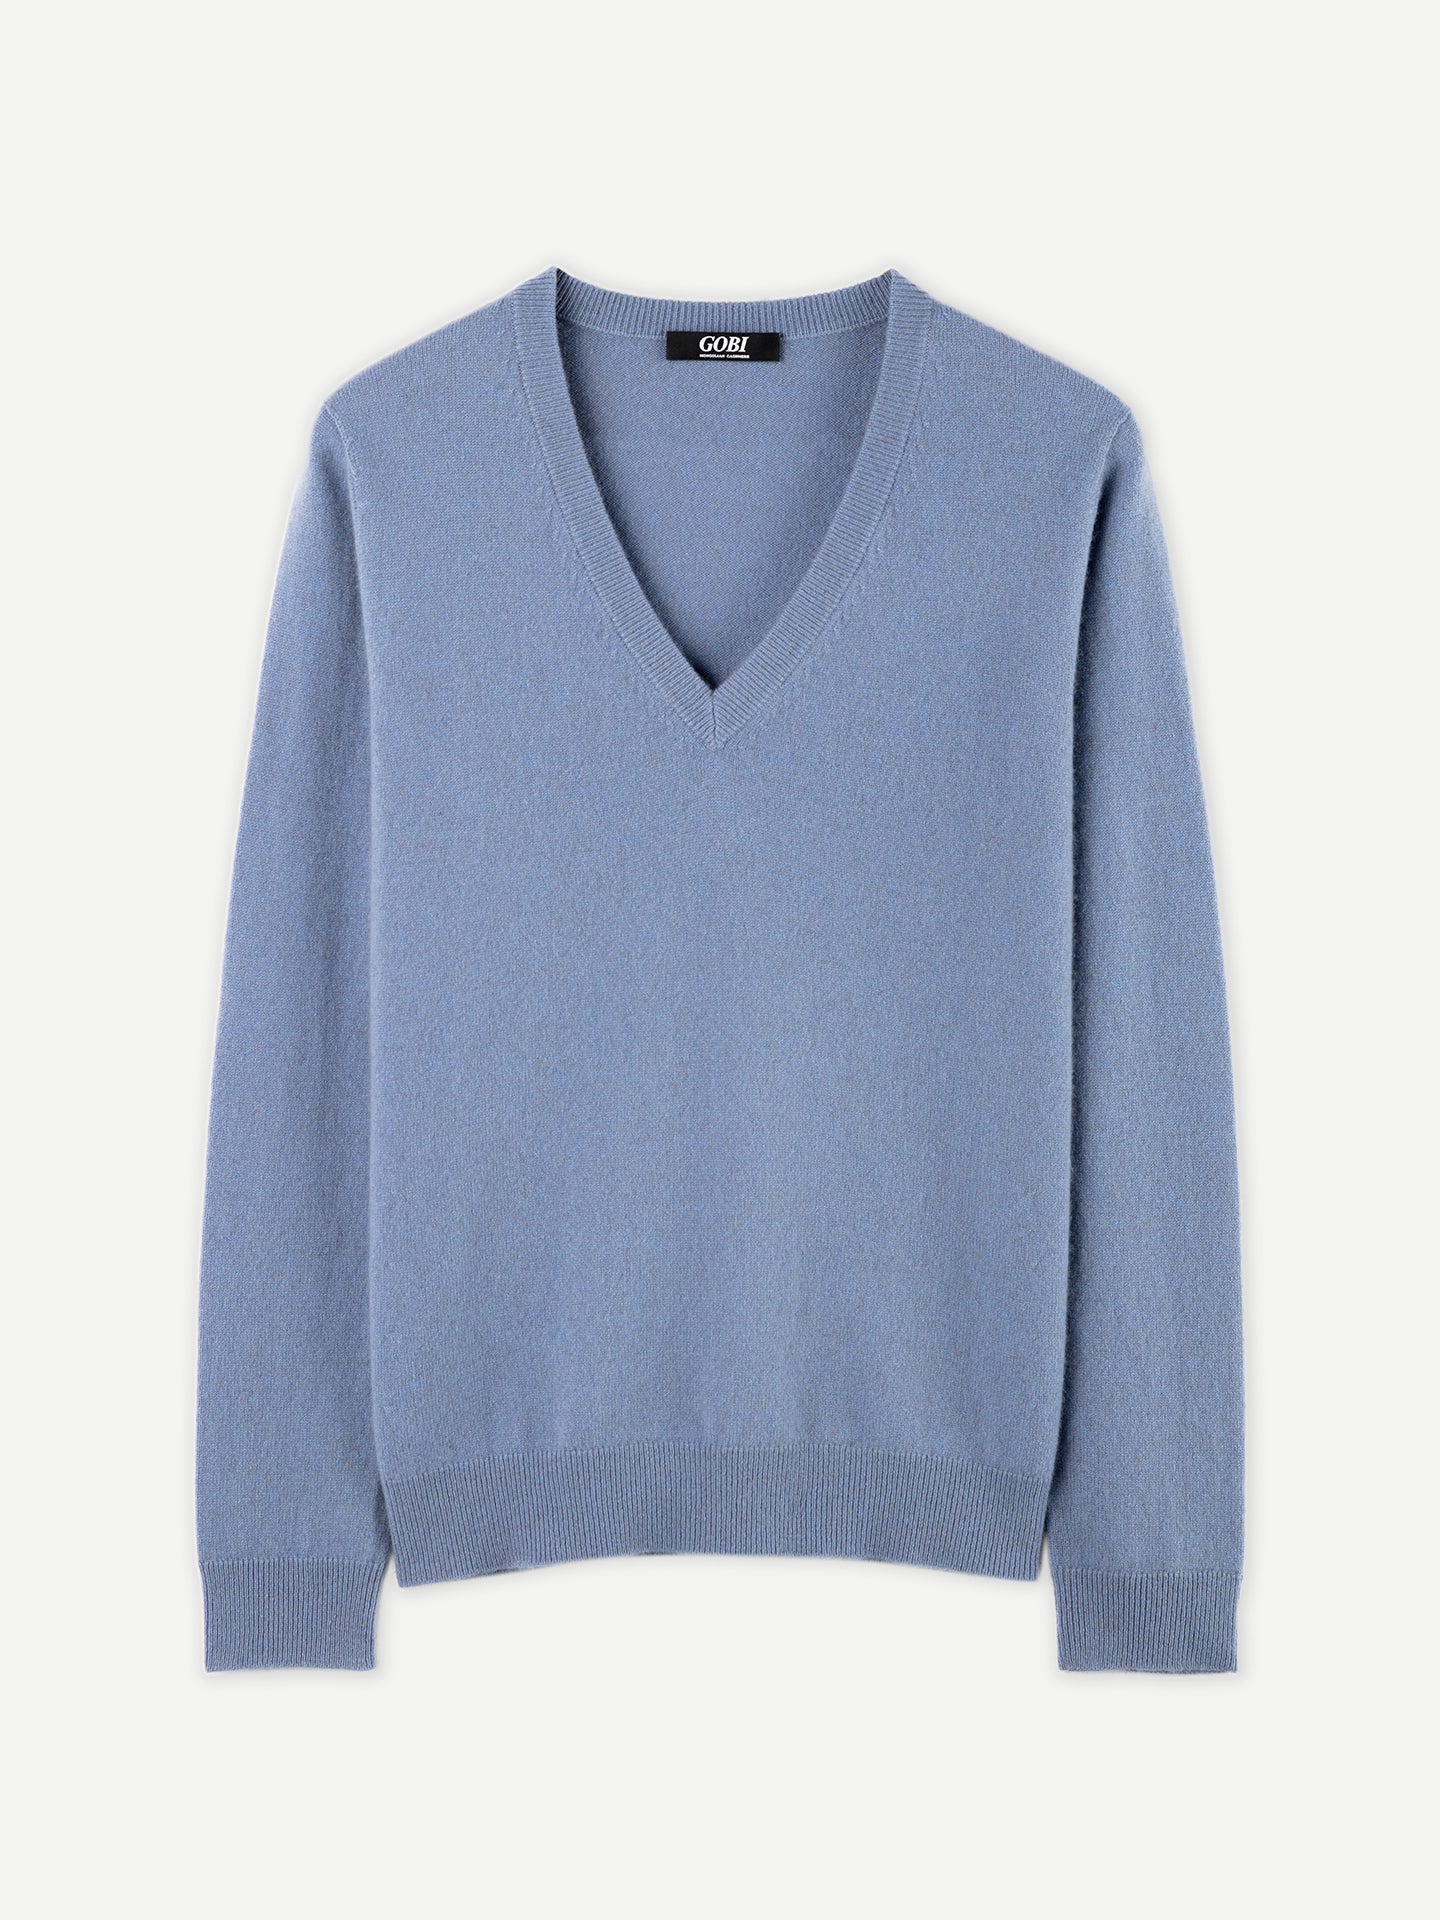 Women's Basic Cashmere V-Neck Sweater English Manor - Gobi Cashmere